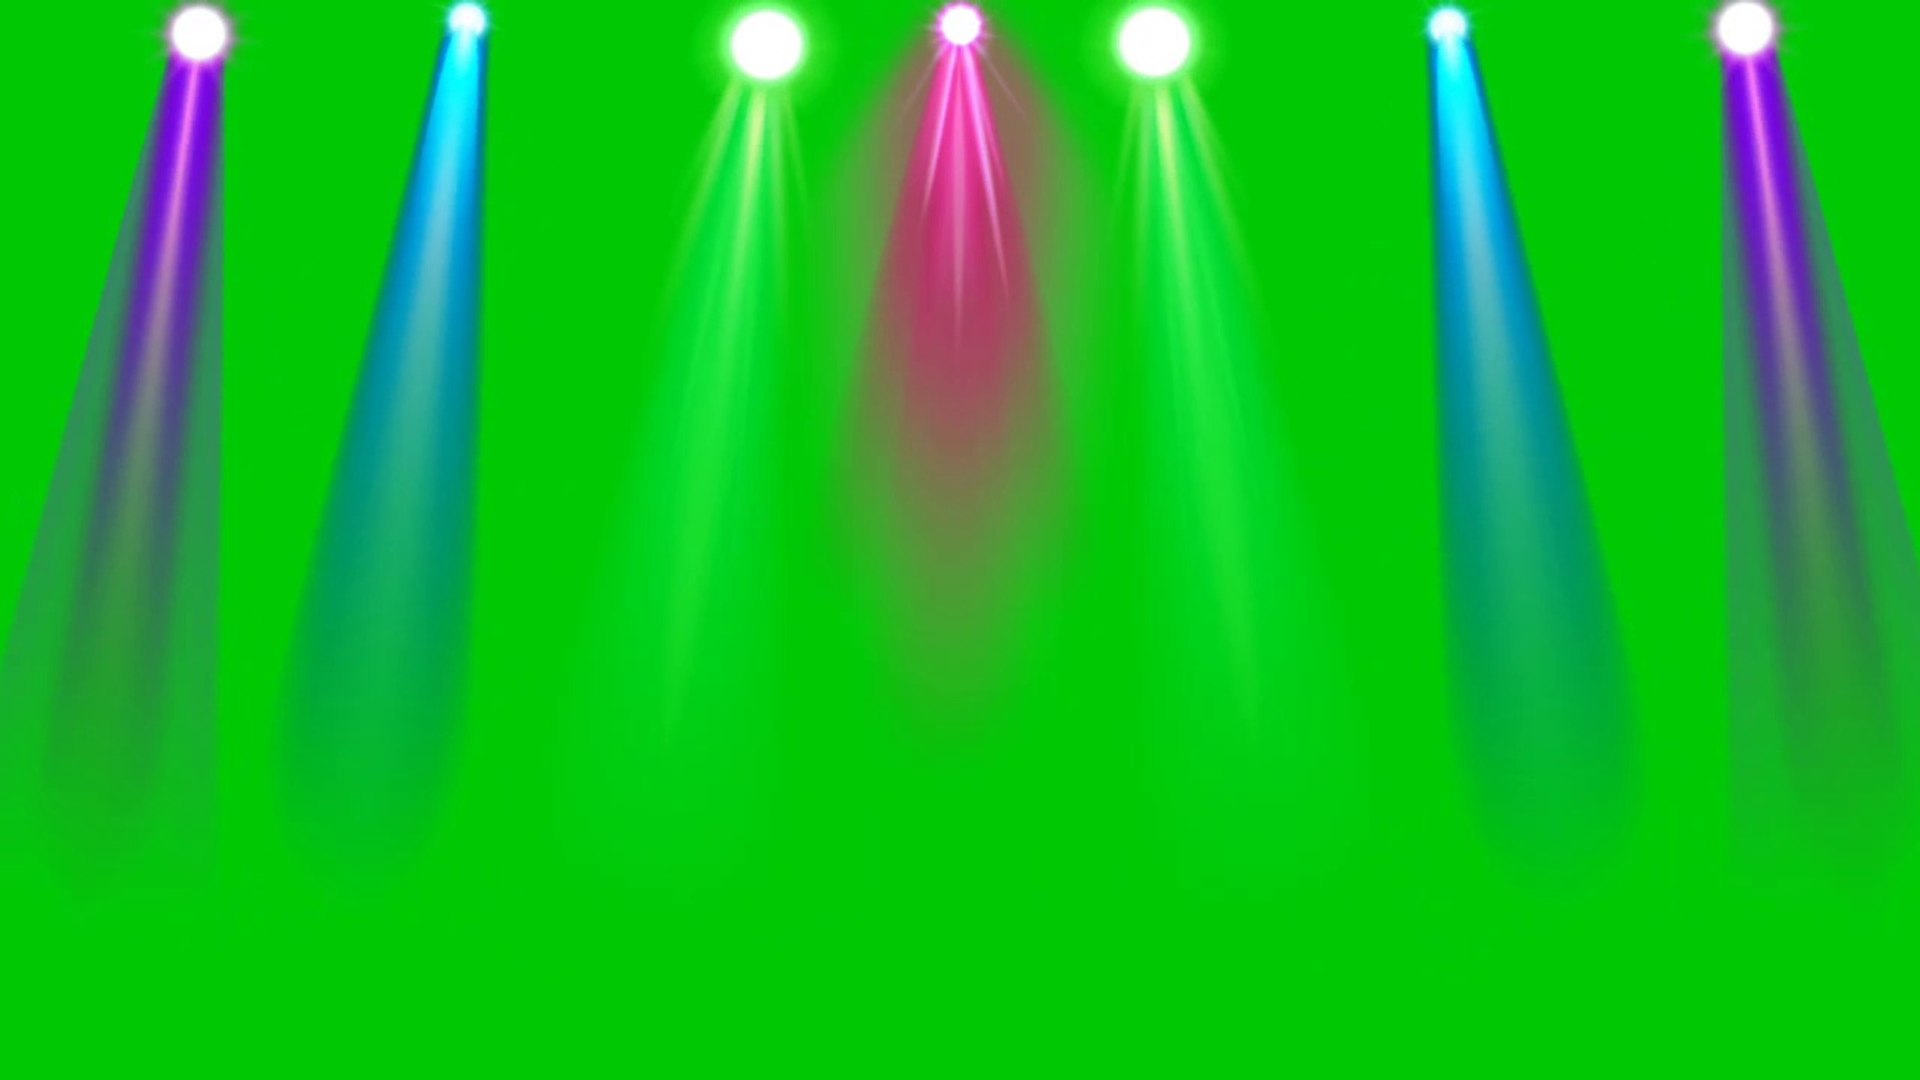 Disco light green: Hòa vào không khí vui tươi với những ánh sáng Disco light màu xanh tuyệt đẹp. Đón nhận niềm vui và sức sống từ màu sắc tươi mới, bạn sẽ có trải nghiệm tuyệt vời cùng những điệu nhảy sôi động. Xem ngay để cảm nhận sự sống động và sức mạnh của màu xanh trong buổi party của bạn.